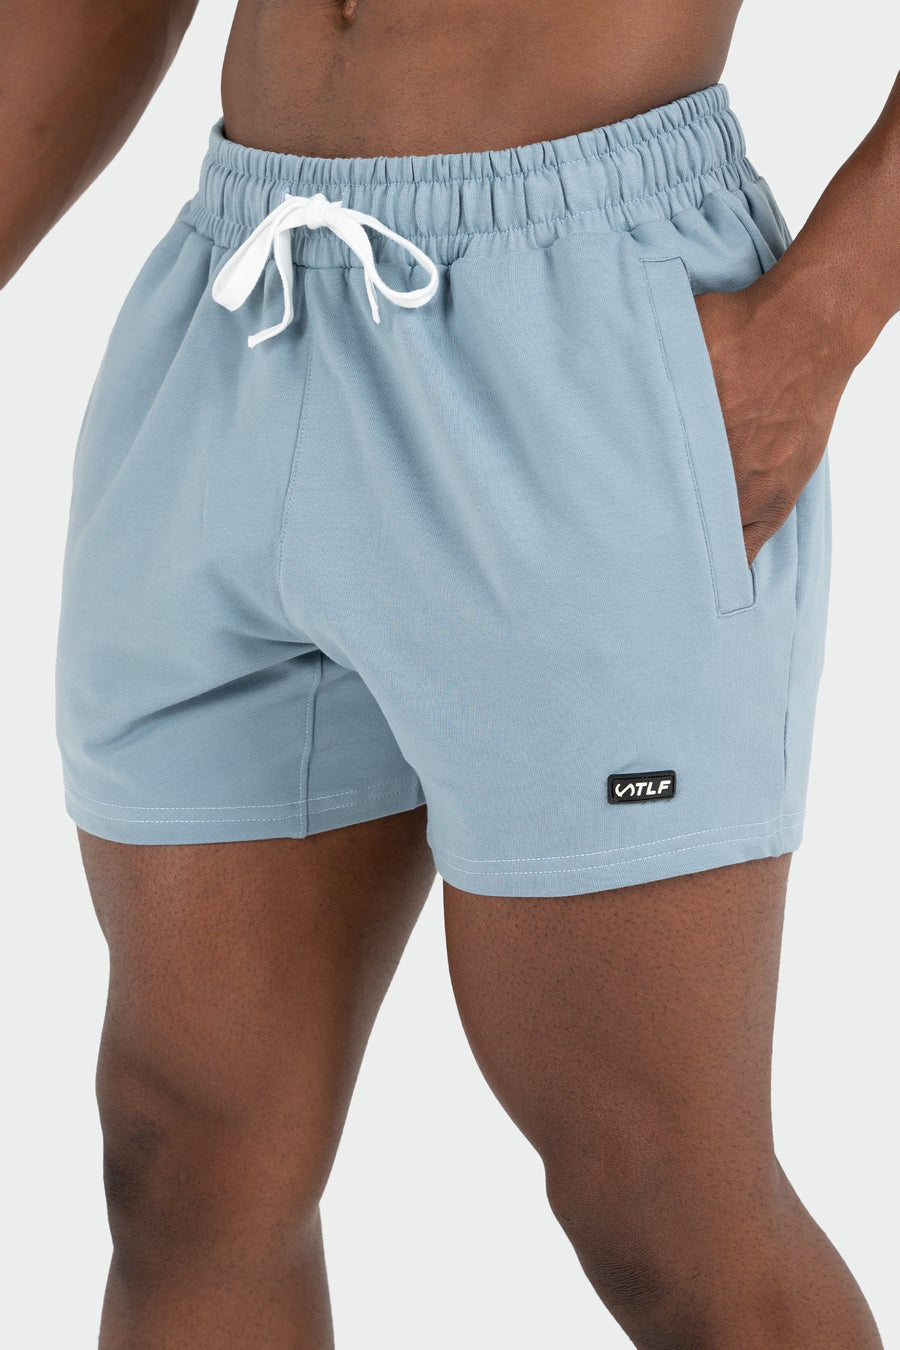 TLF Varsity 5” Shorts - 5 In Inseam Shorts Men – Light Blue - 2